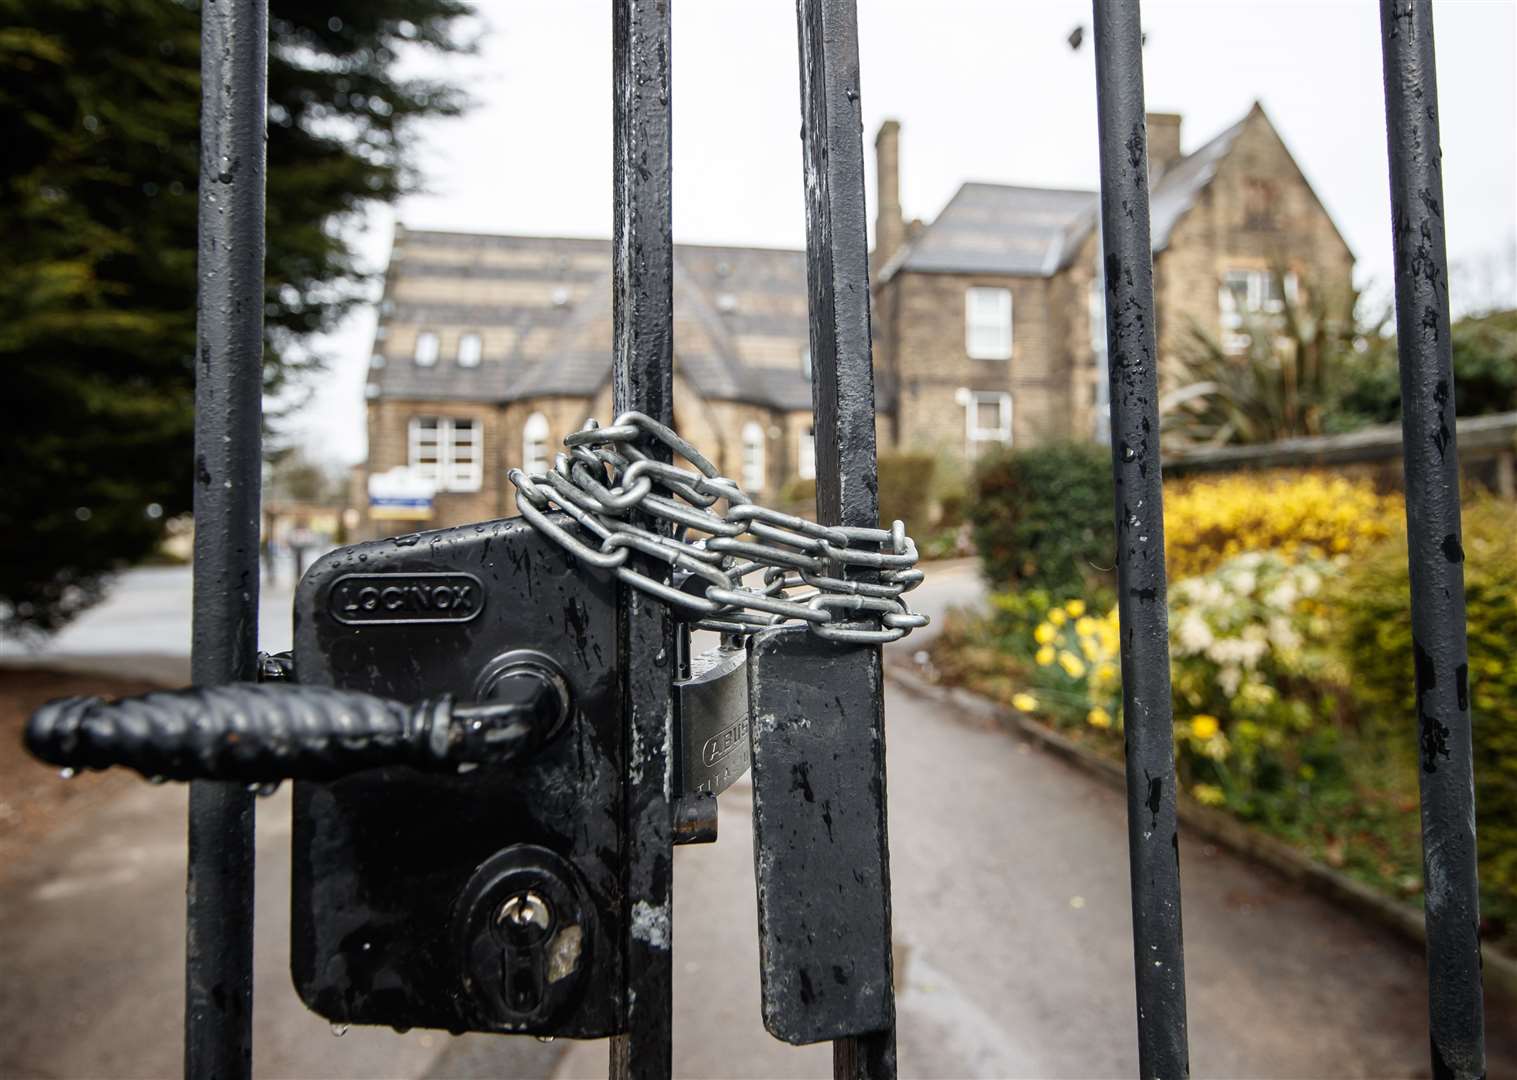 Chained gates at Batley Grammar School (Danny Lawson/PA)